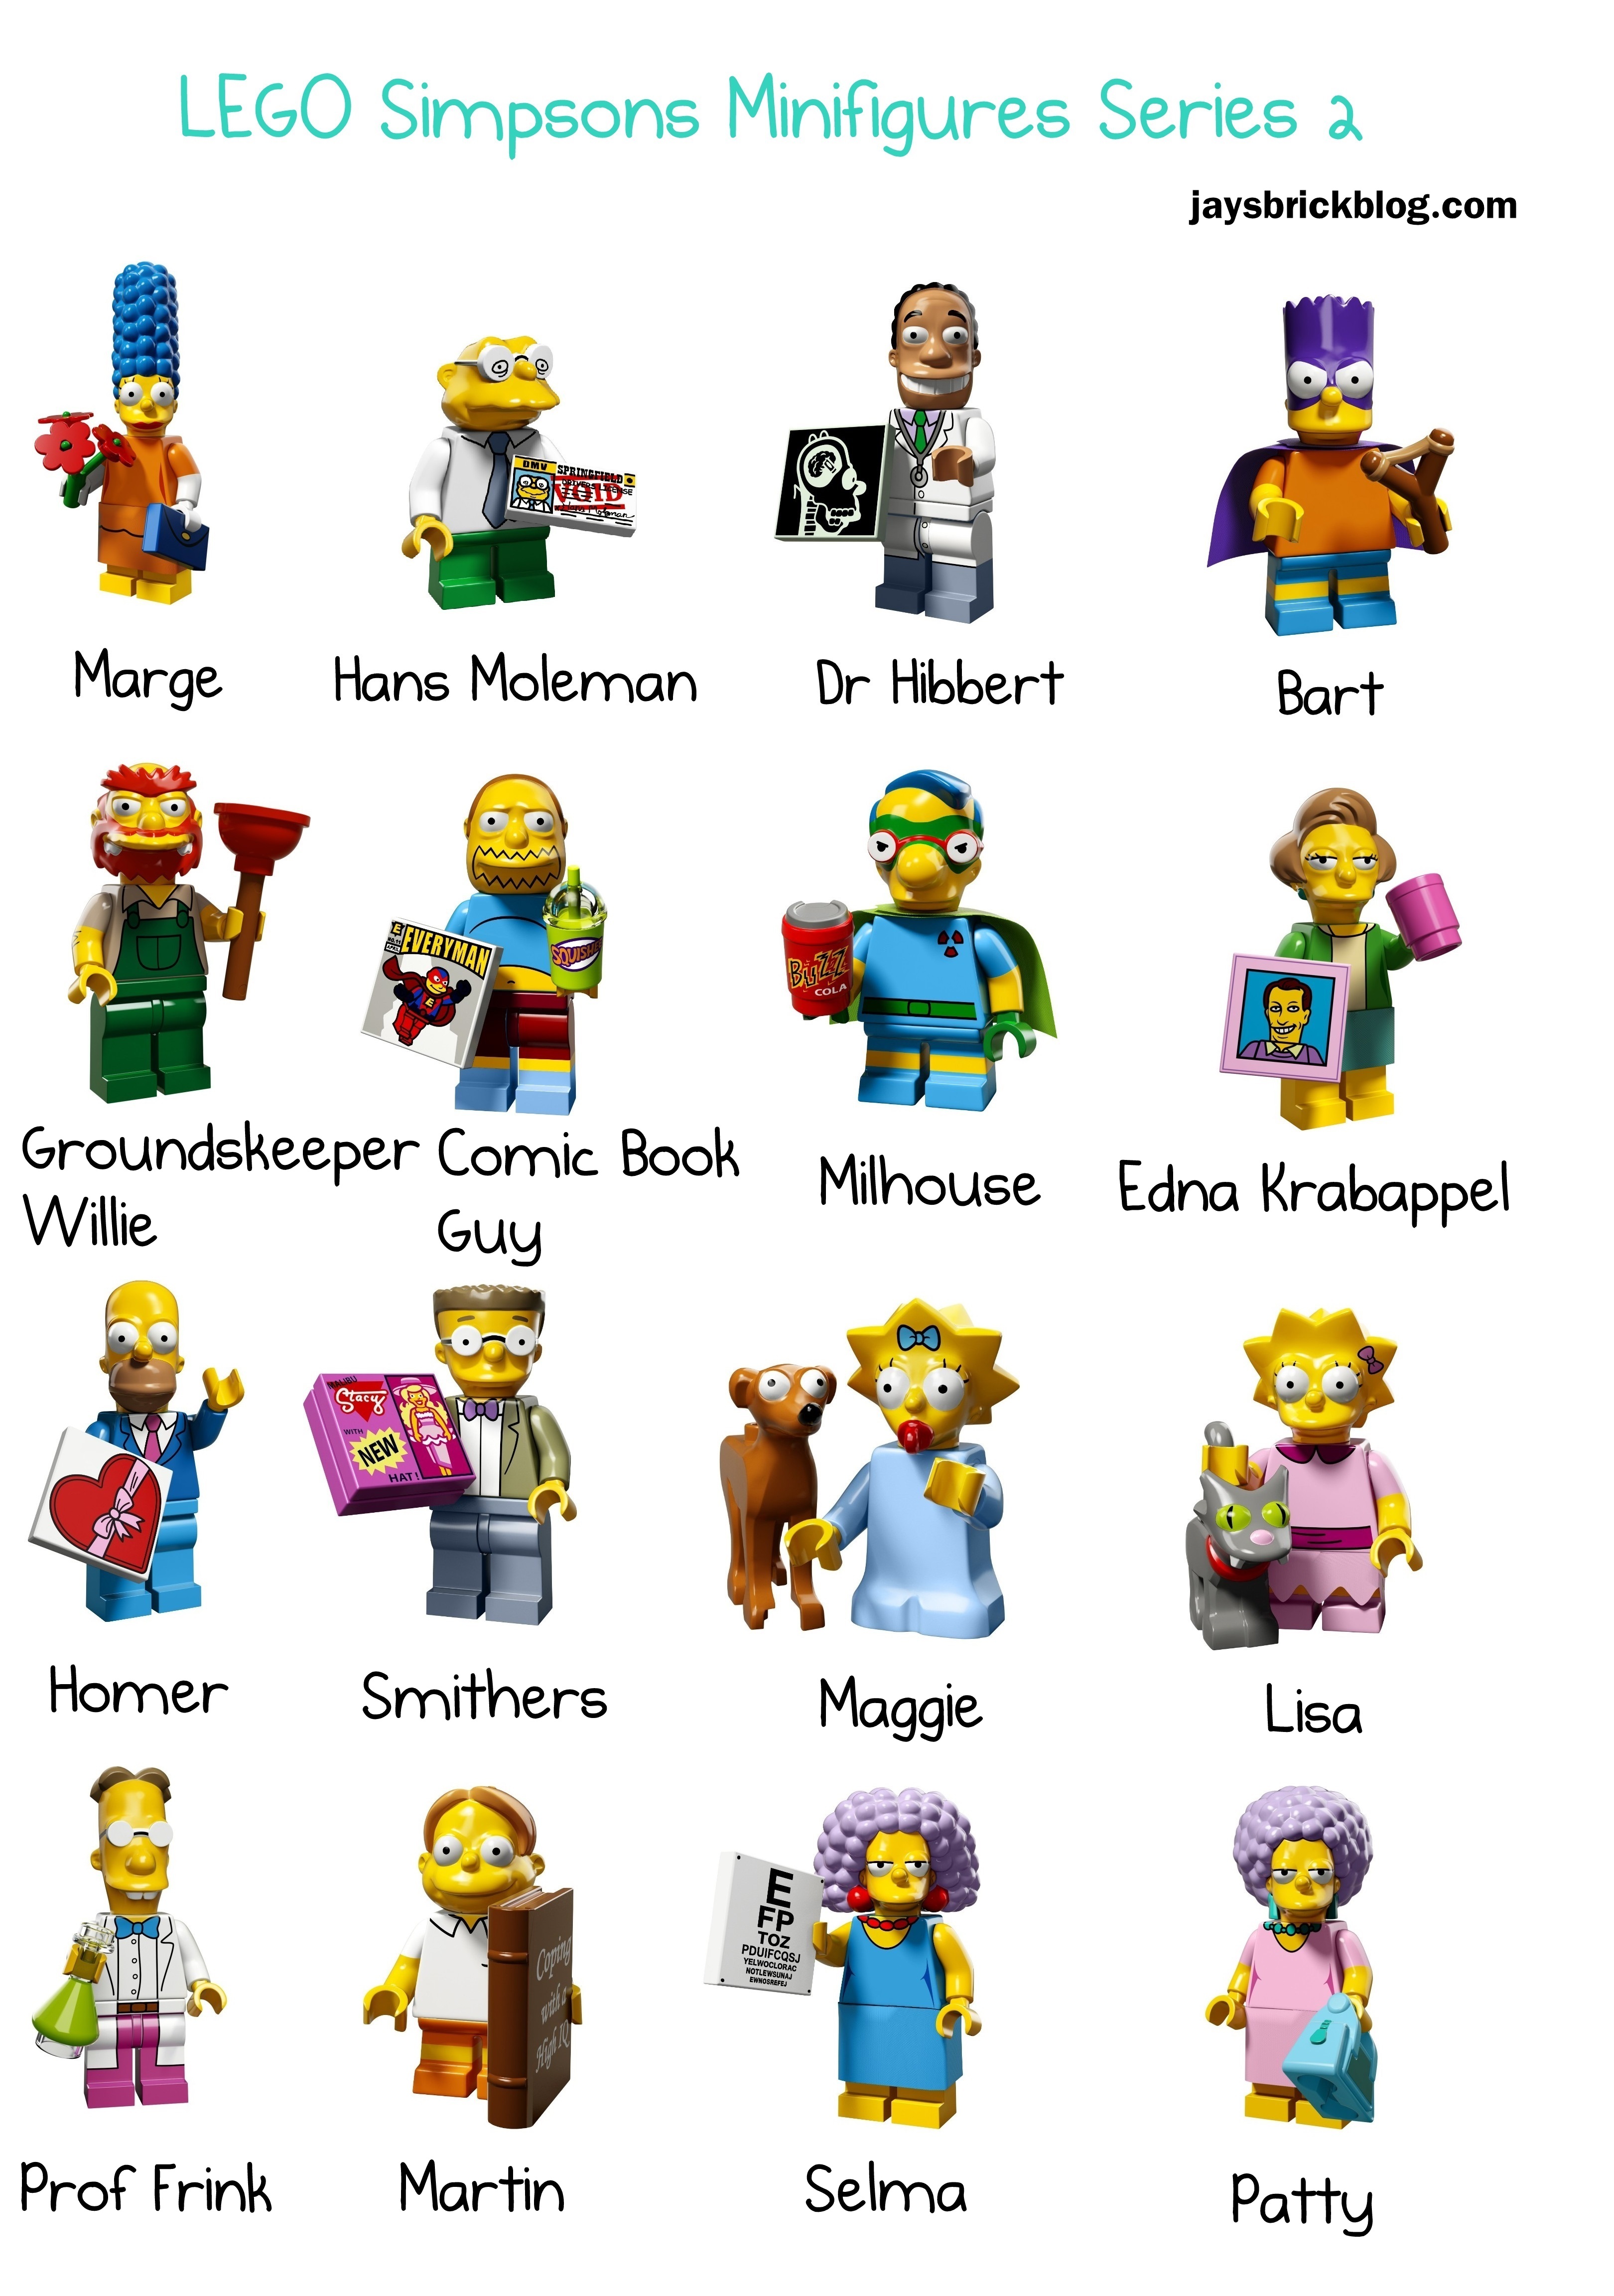 Simpsons series 1 lego mini figure BART SIMPSON 